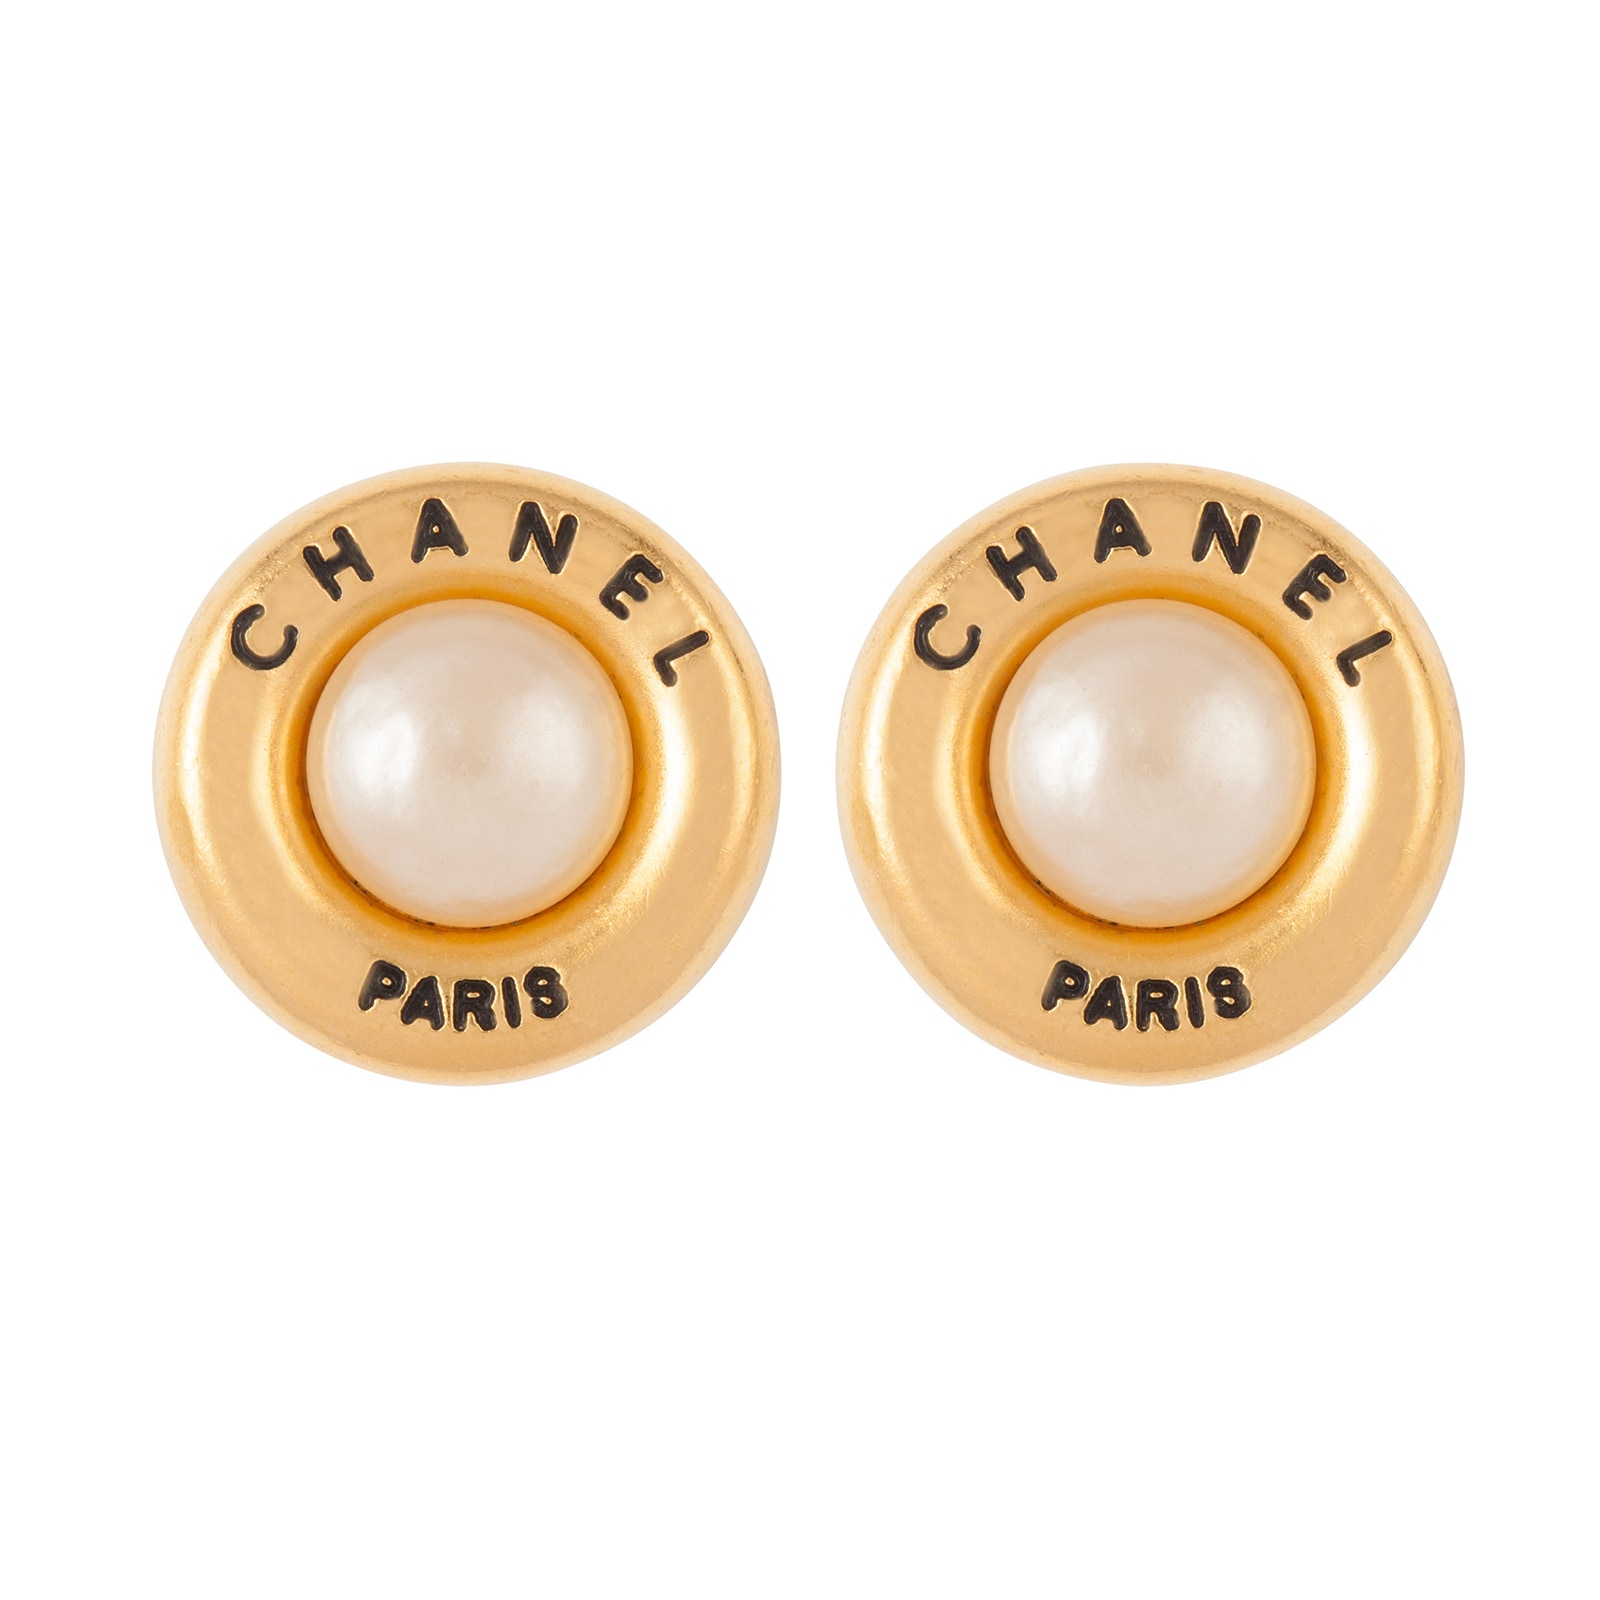 chanel large pearl earrings vintage